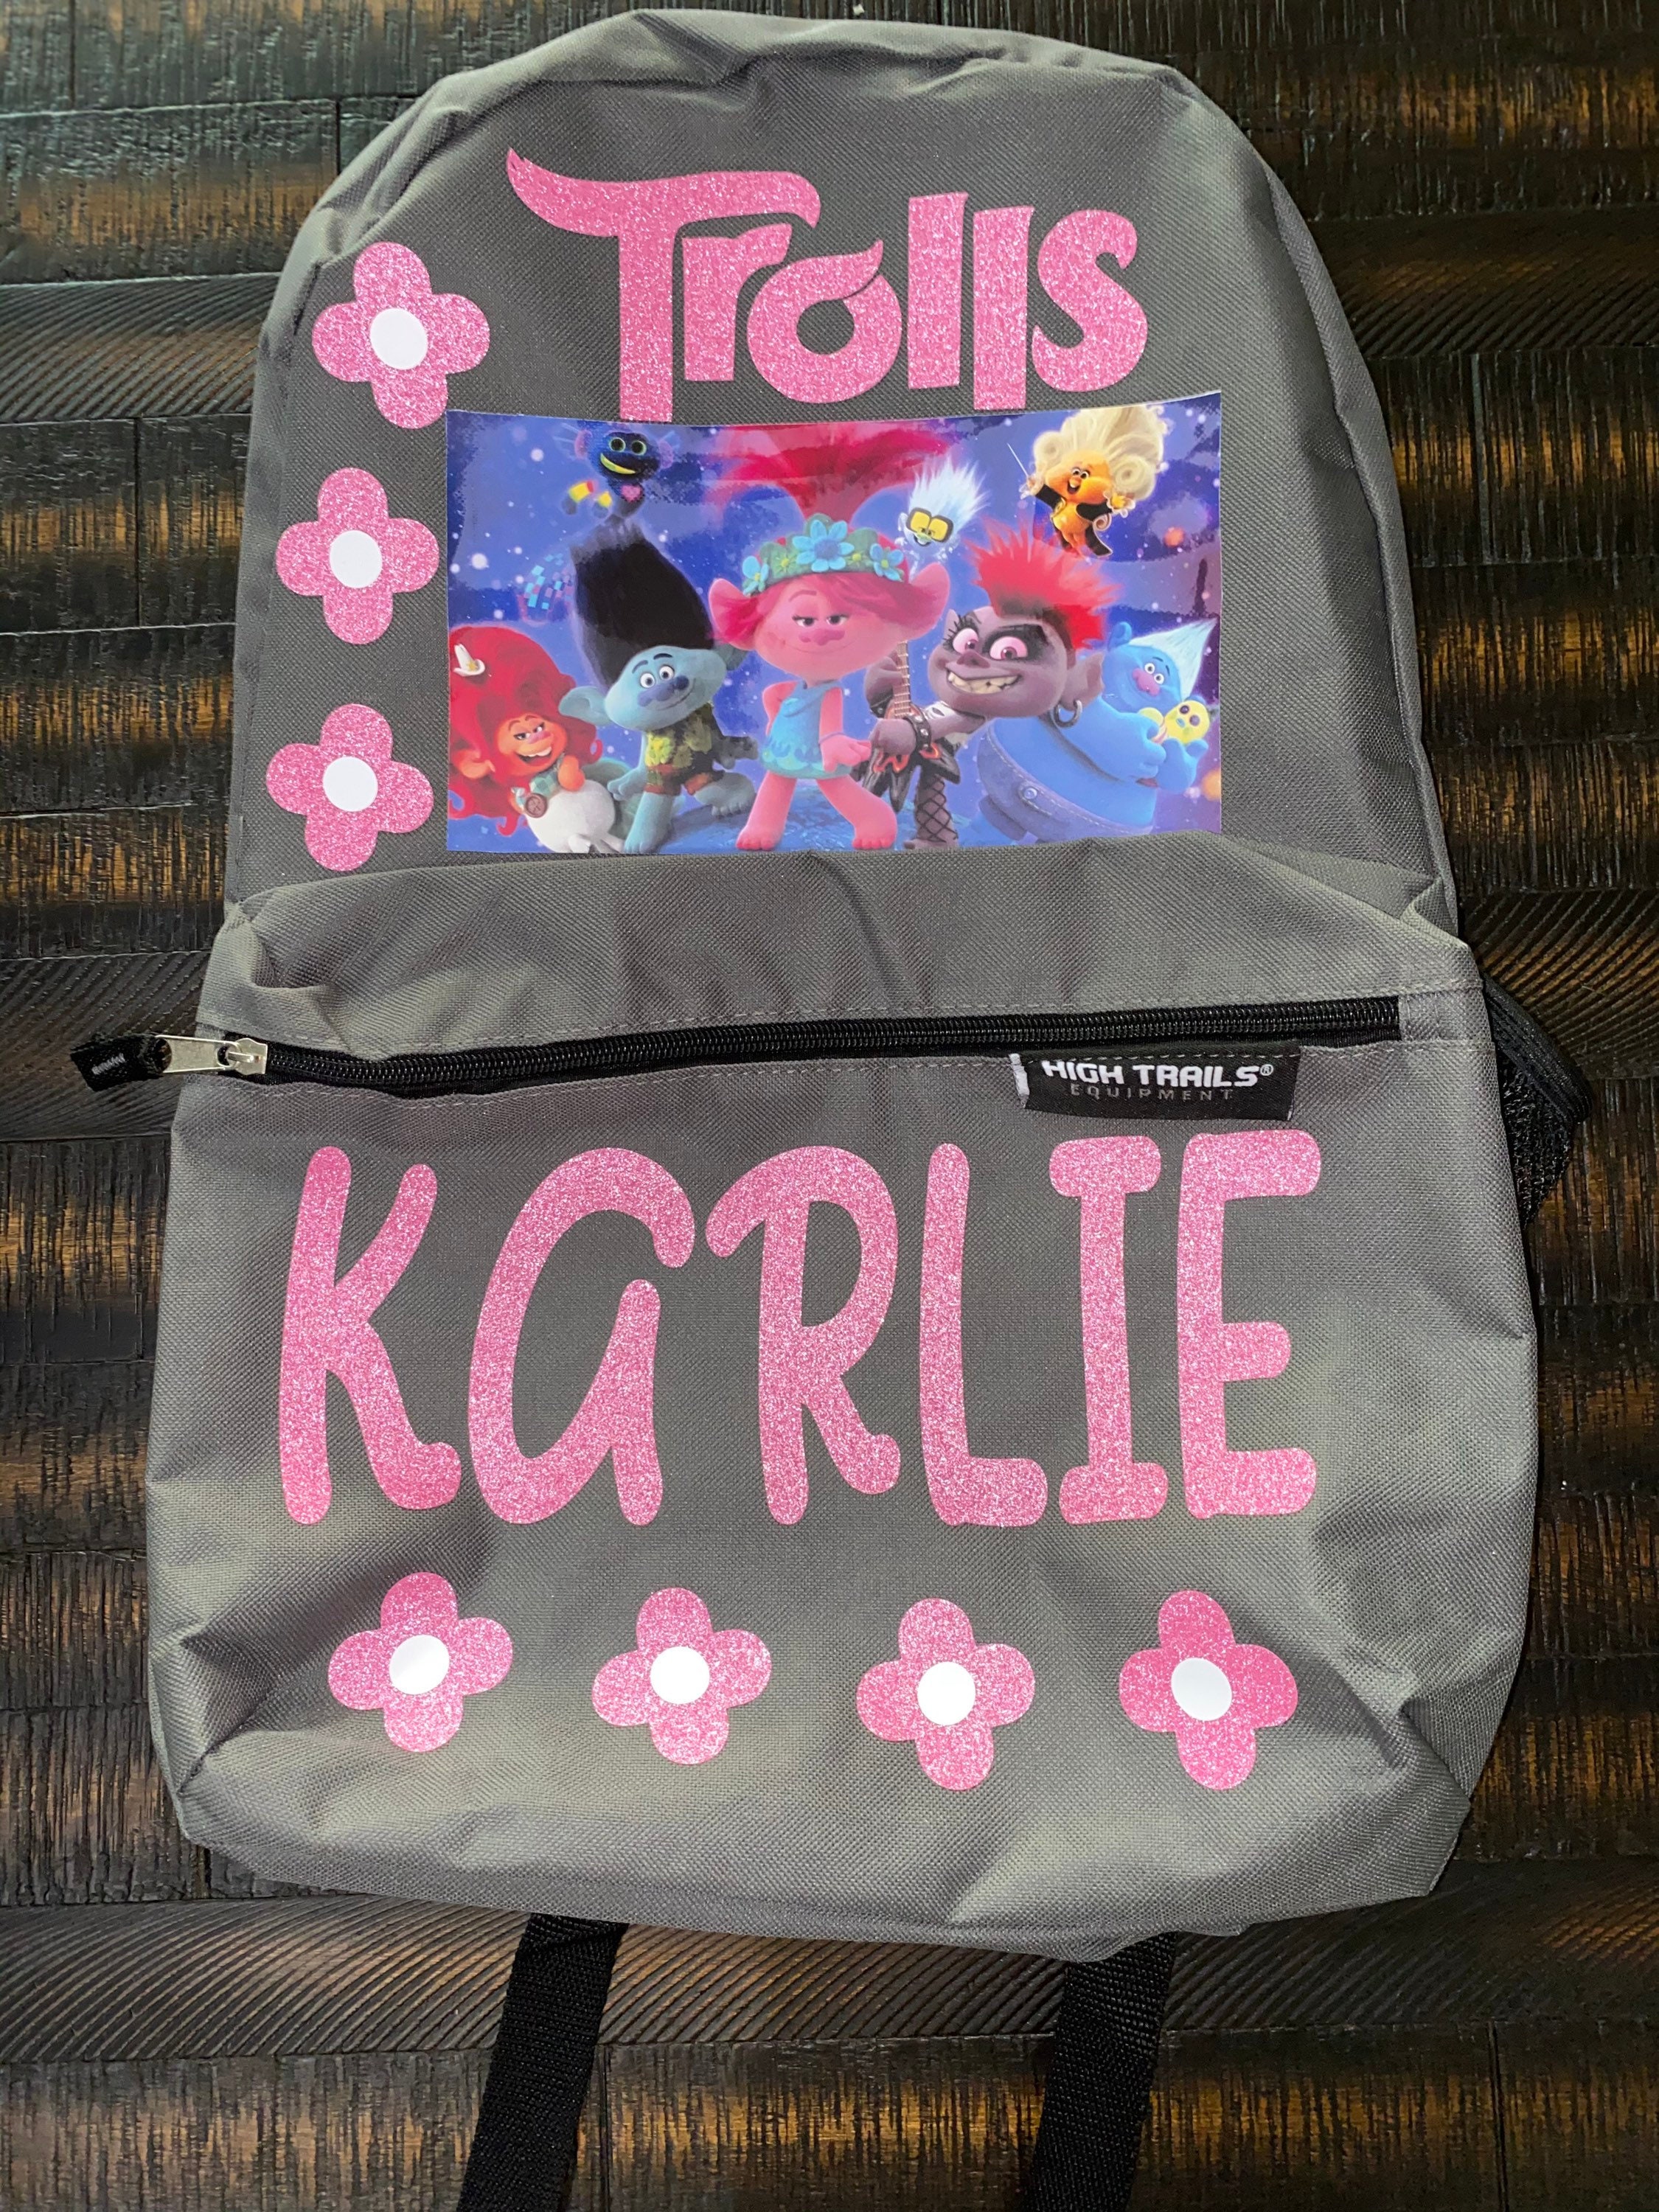 Trolls World Tour Poppy Girl School Backpack BookBAG Lunch Box SET Kids  Gift Toy